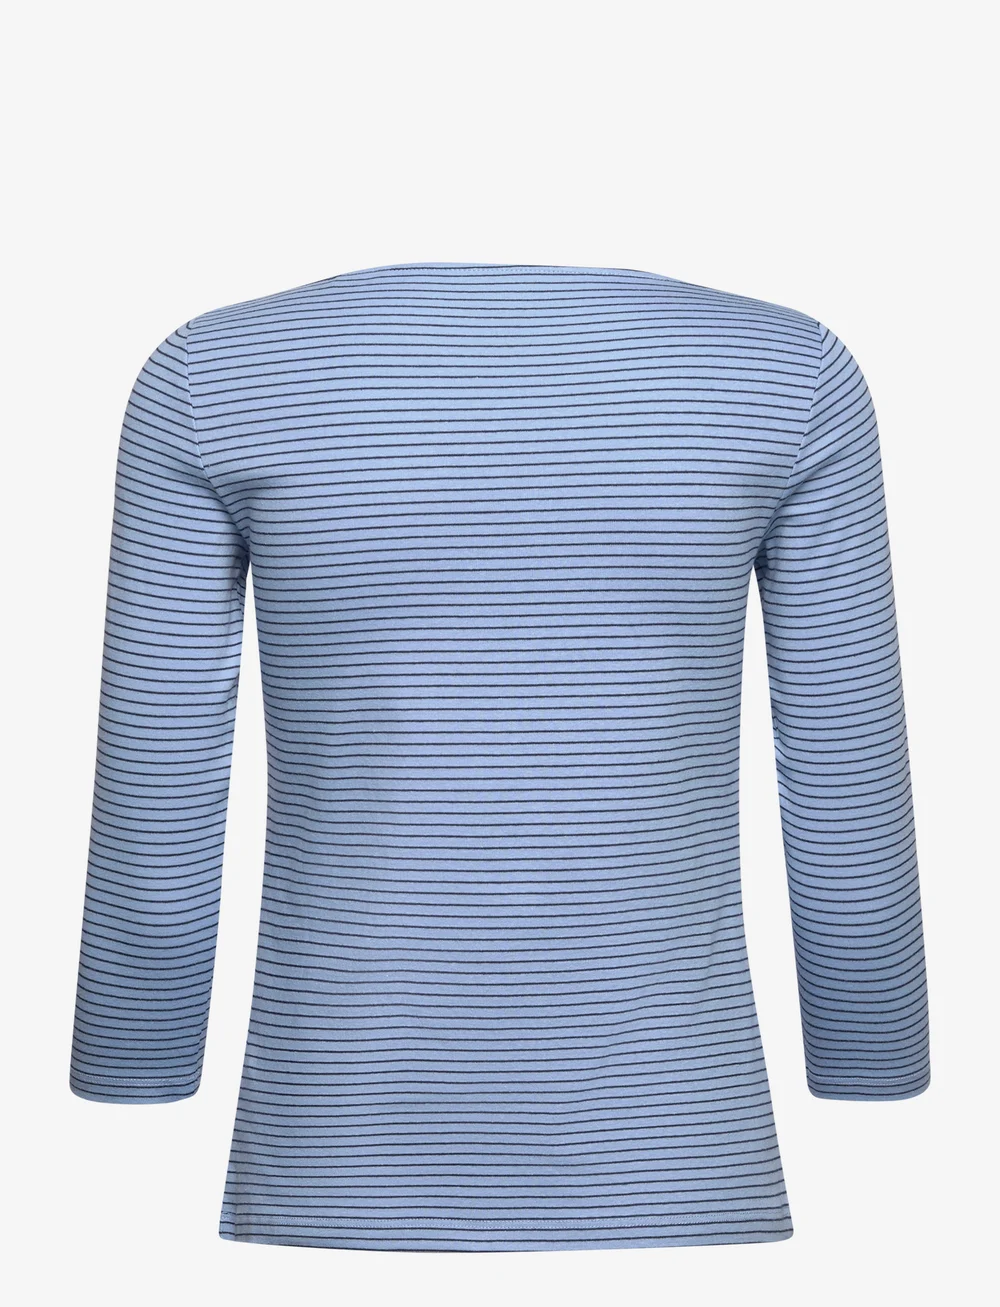 Tom Tailor T-shirt Boat Neck Stripe - Long-sleeved tops